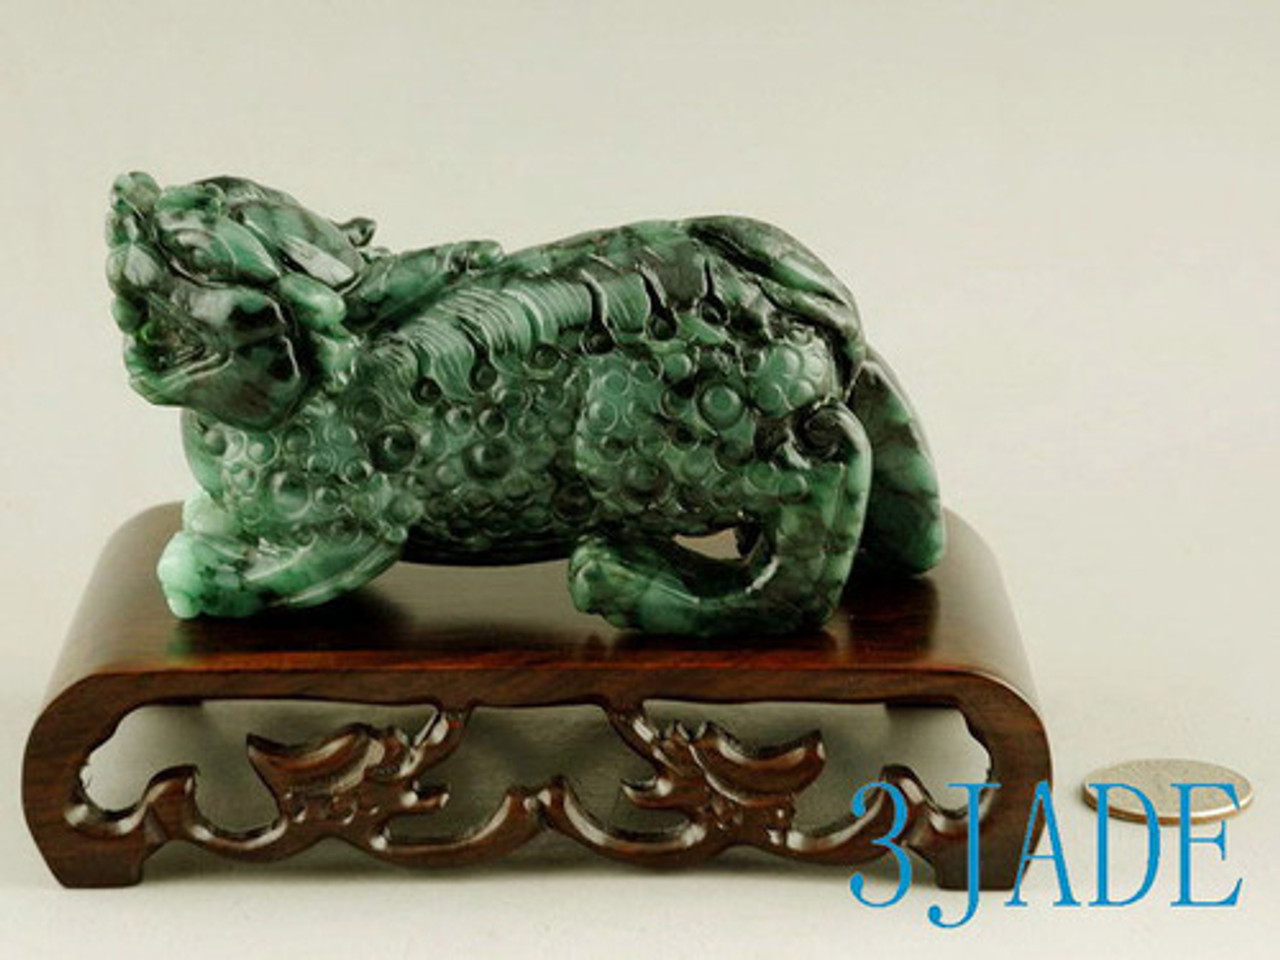 Natural Jadeite Jade Carving / Sculpture: Divine Animal - Pixiu Statue